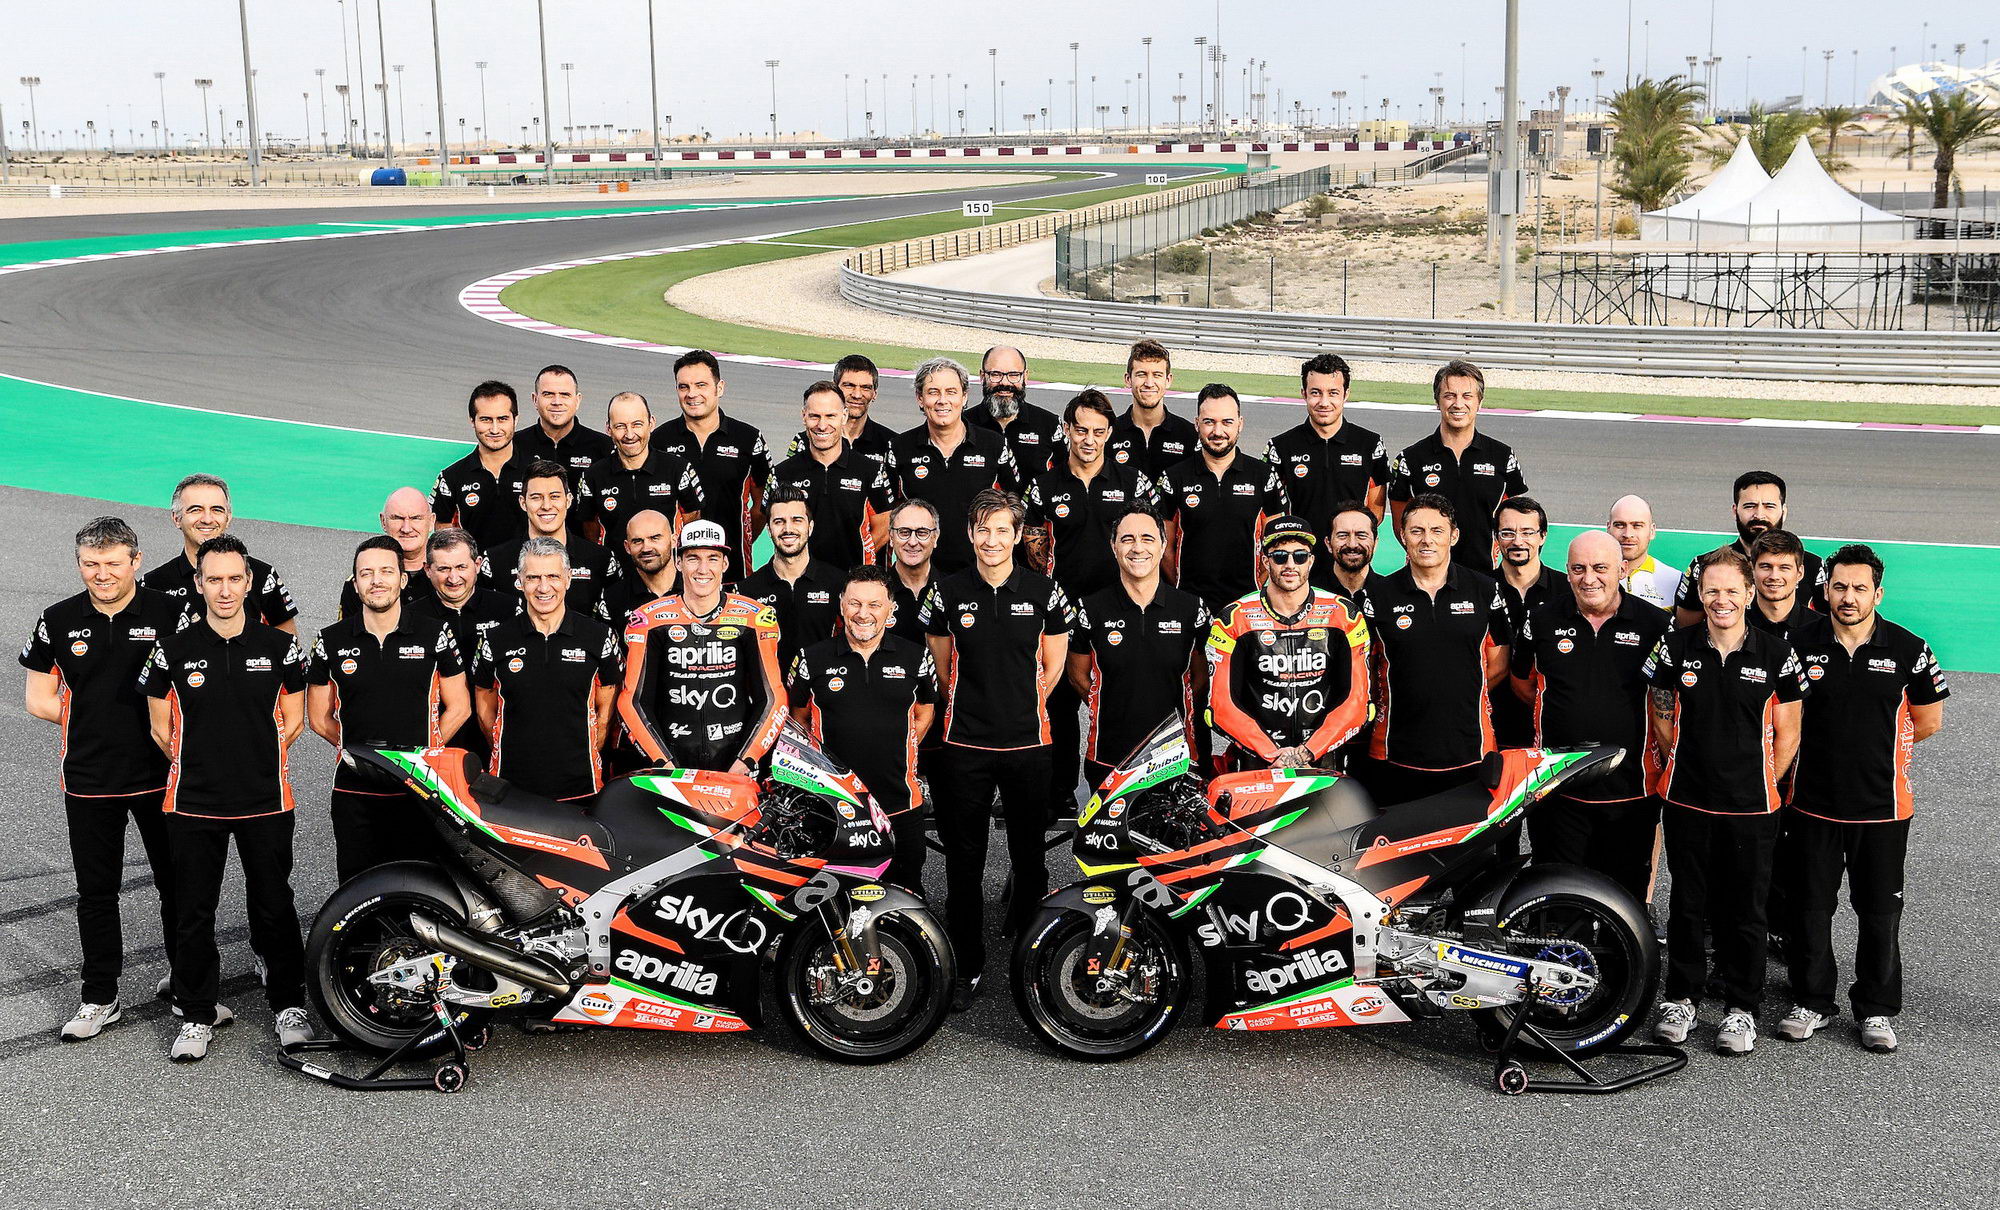 1/26二月 22 日,卡塔尔洛塞赛车场,阿普利亚 motogp 车队召开了 2019